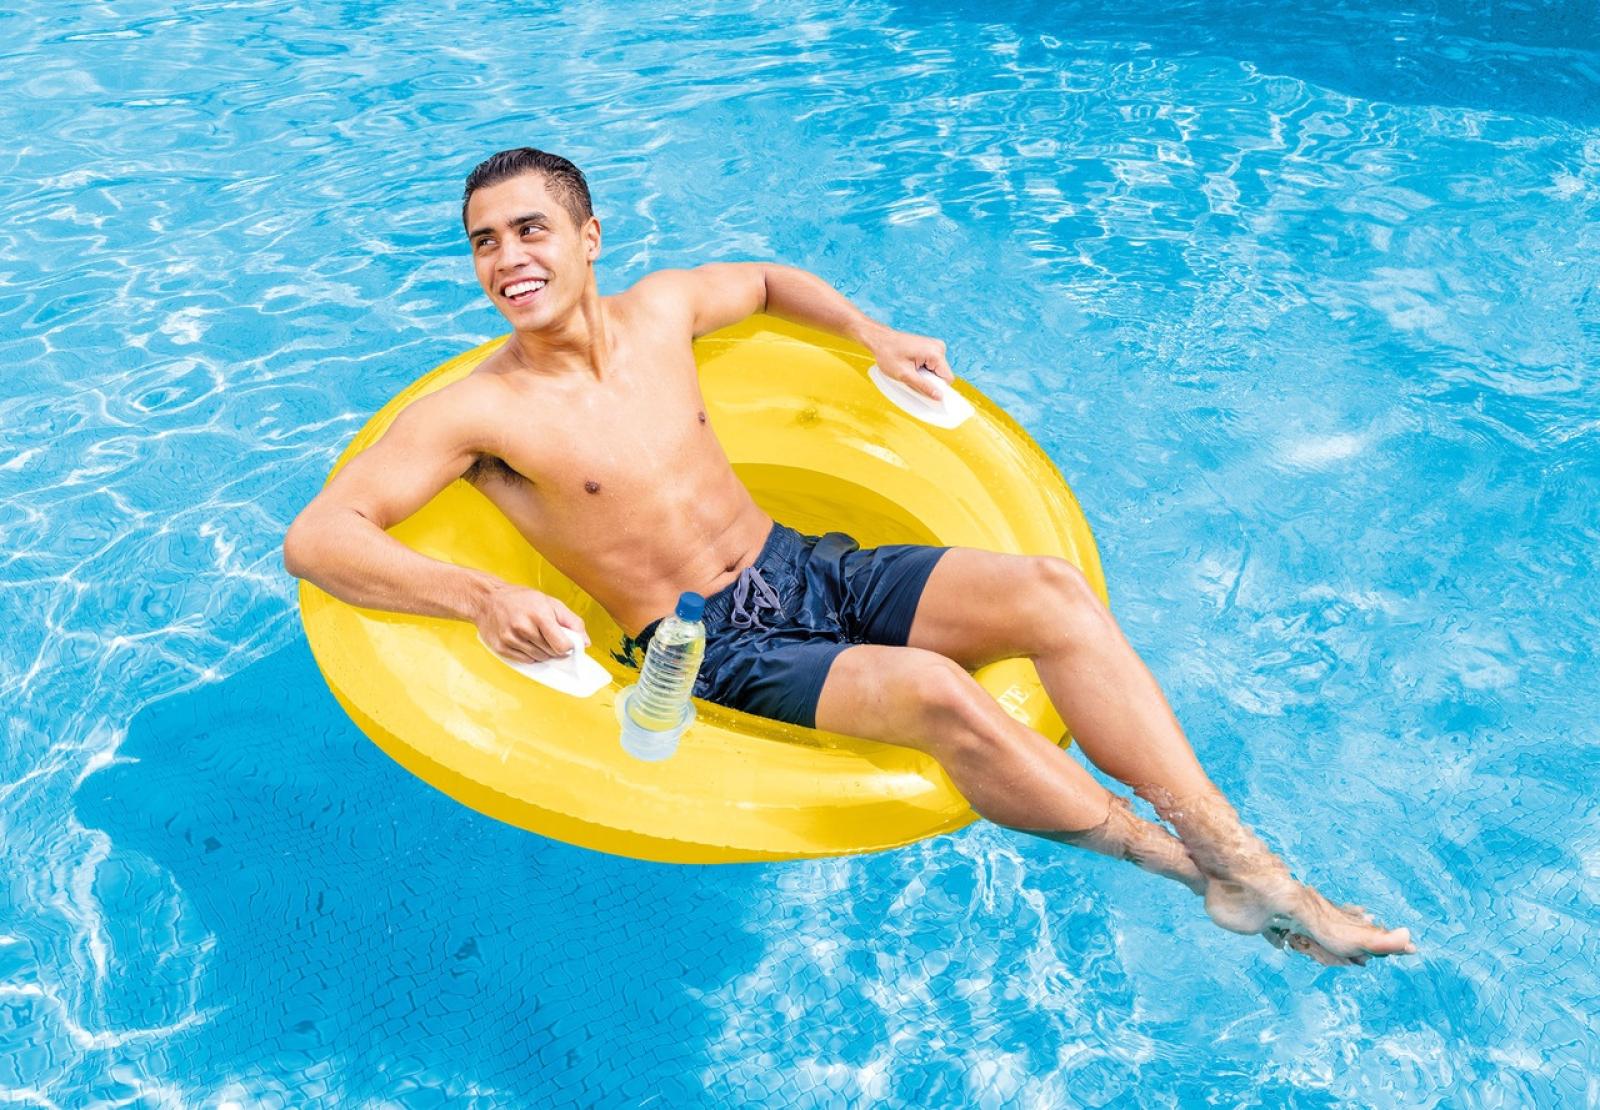 Intex Sit 'N Lounge Inflatable Pool Float